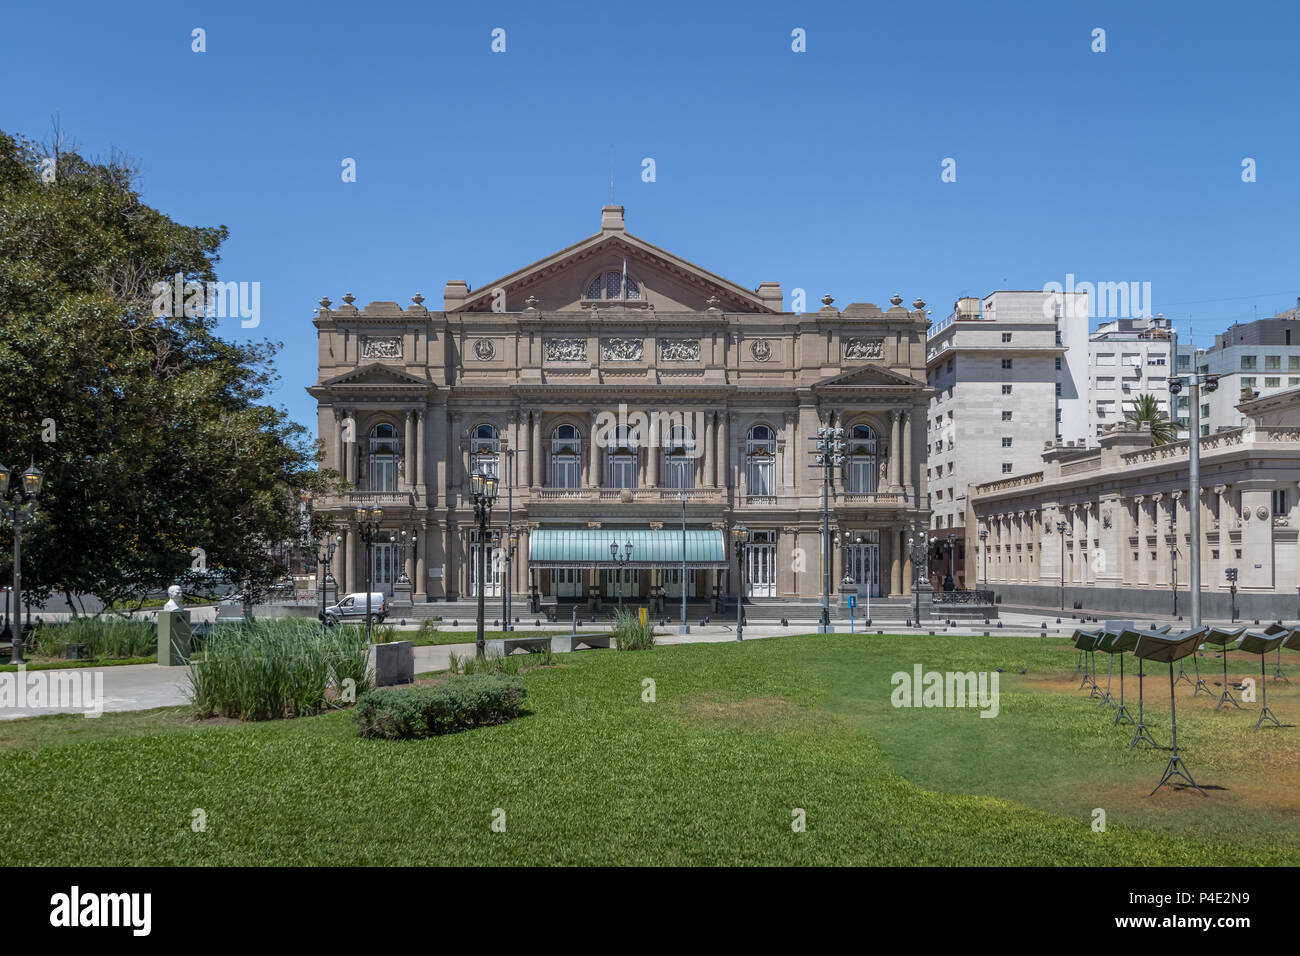 Teatro Colon (Columbus Theatre)  - Buenos Aires, Argentina Stock Photo